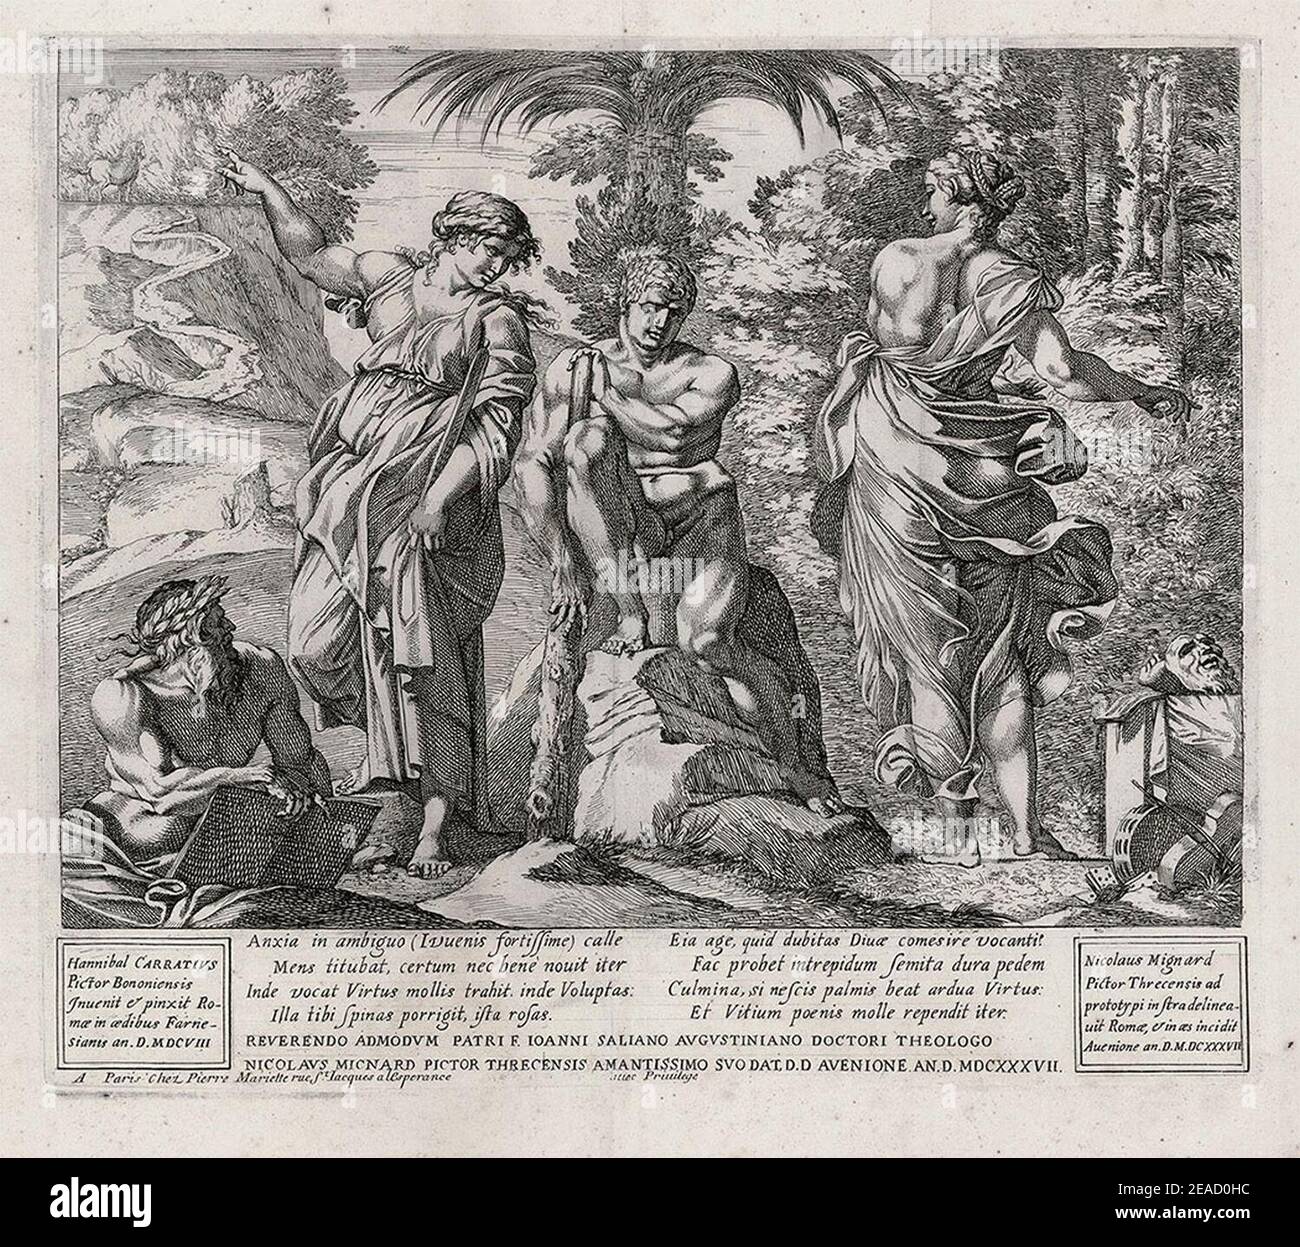 Nicolas Mignard, Hercules al bivio dopo Annibale Carracci. Foto Stock